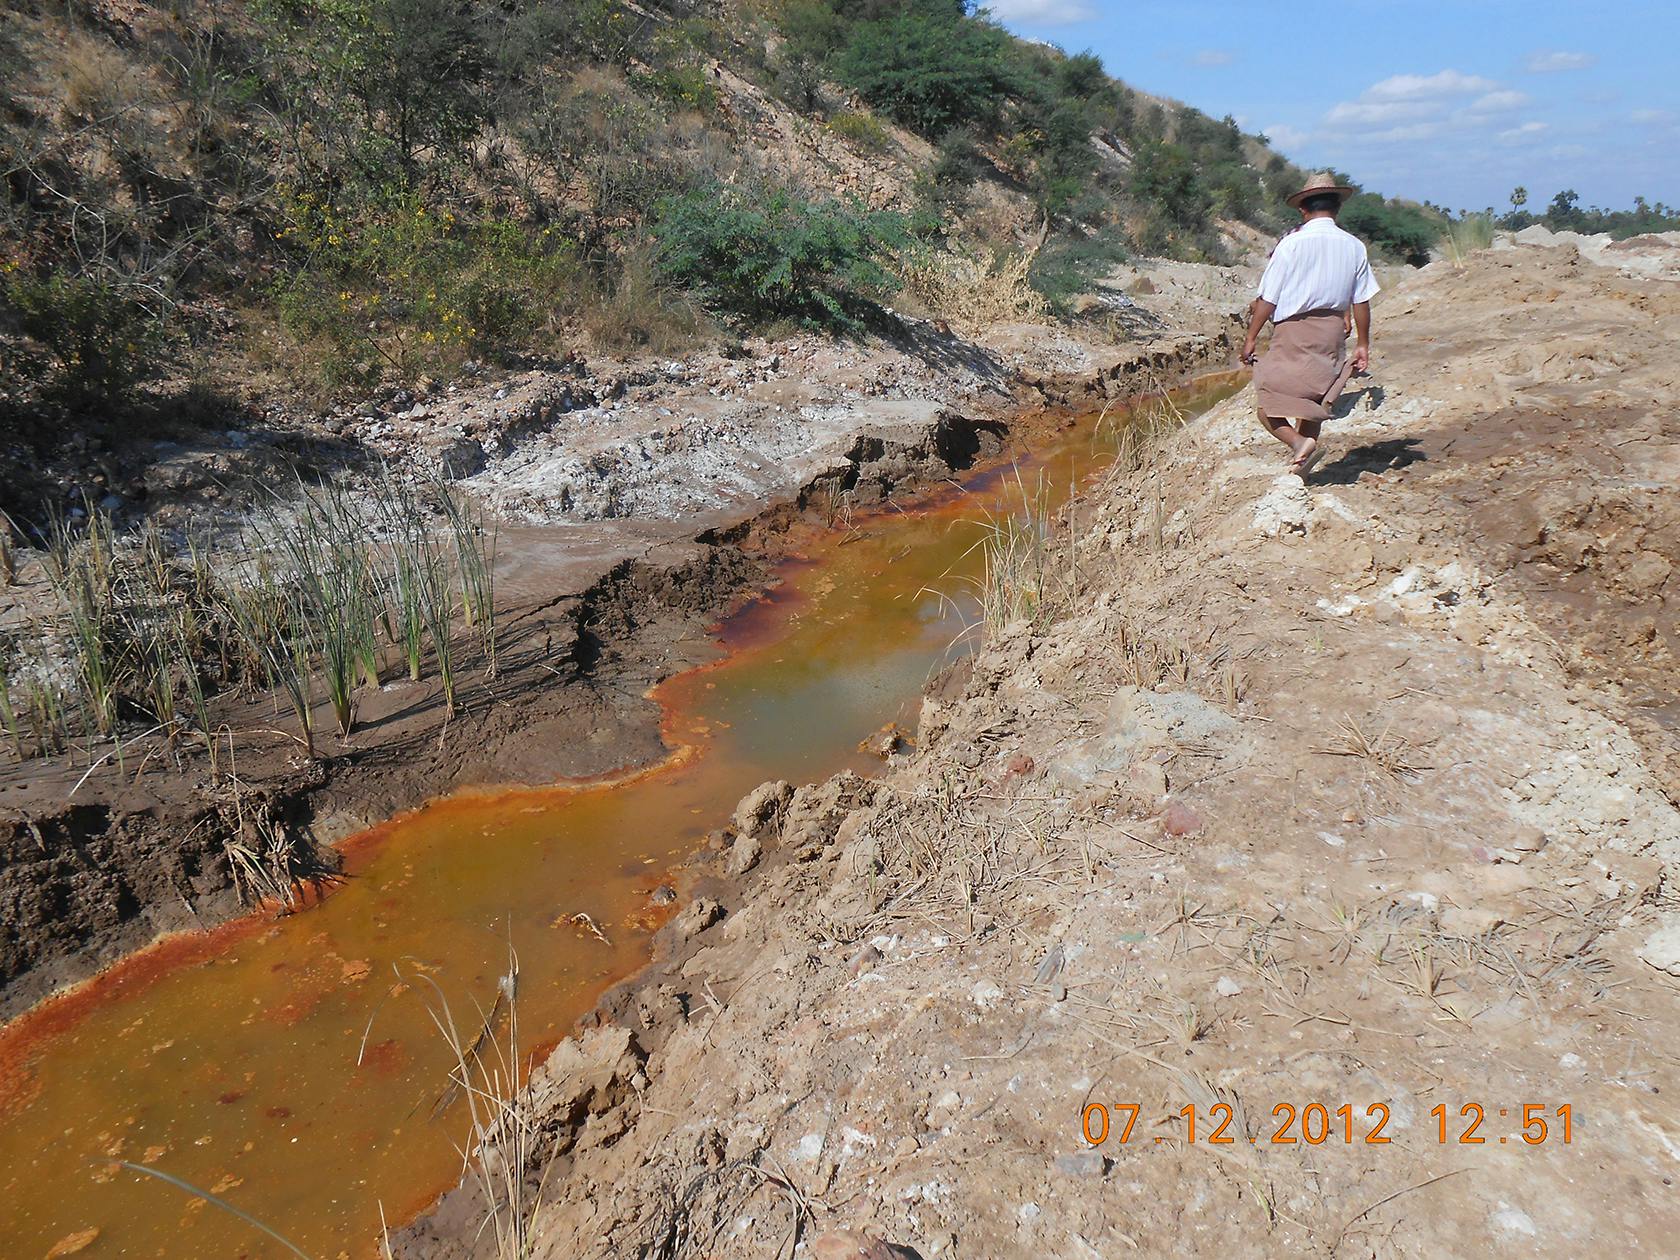 Un canal de drainage contenant des eaux colorées que les villageois disent provenir de la mine Sabetaung et Kyisintaung - décembre 2012